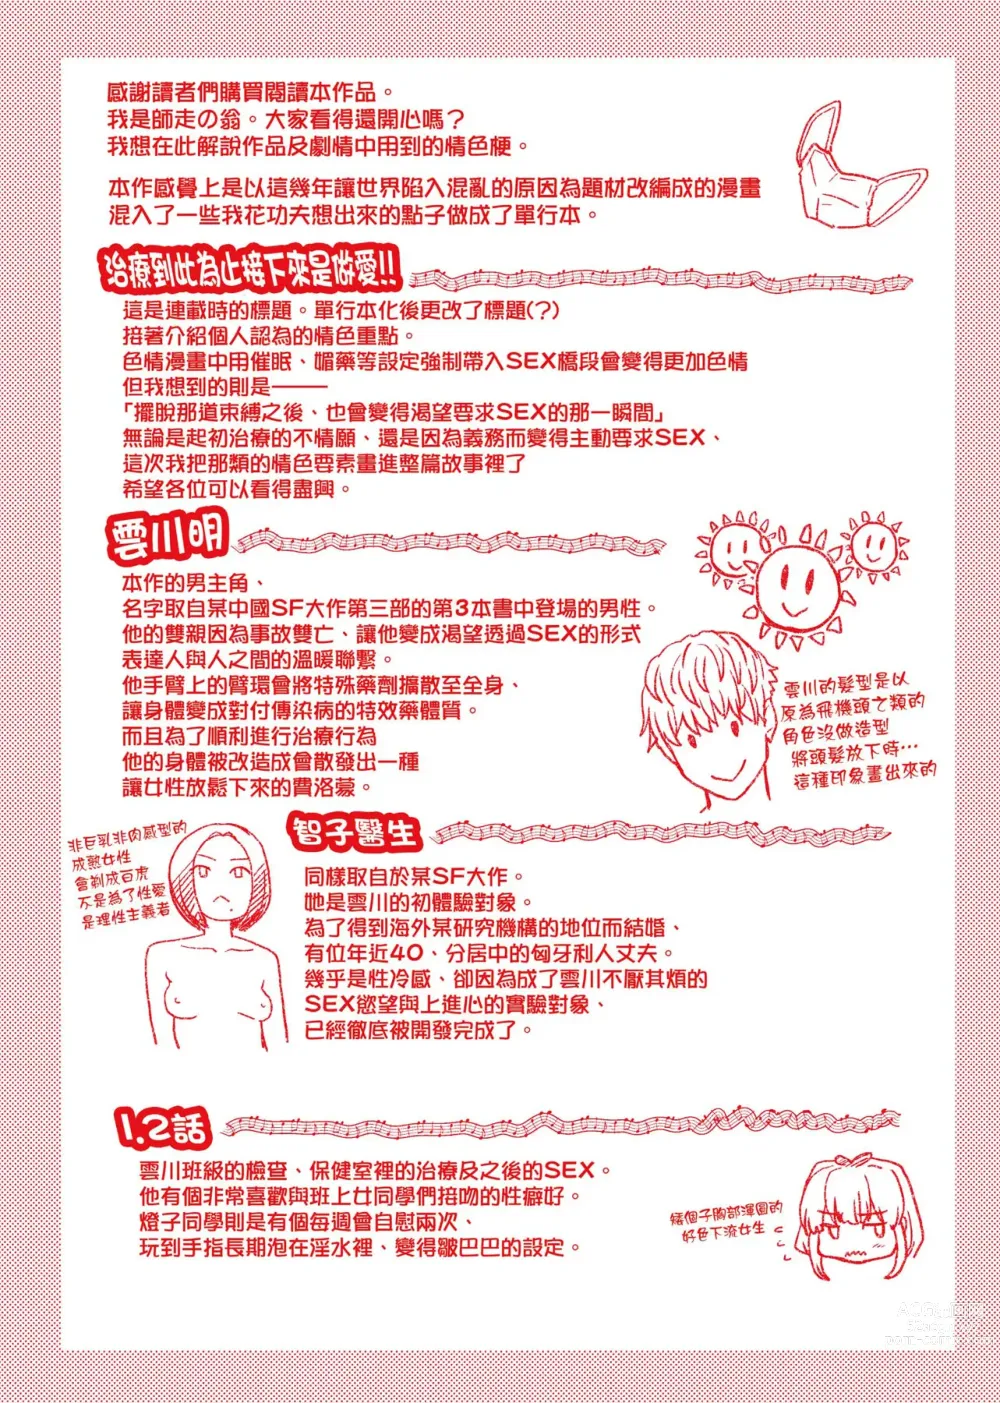 Page 293 of manga 靠我的精液本復快癒!!